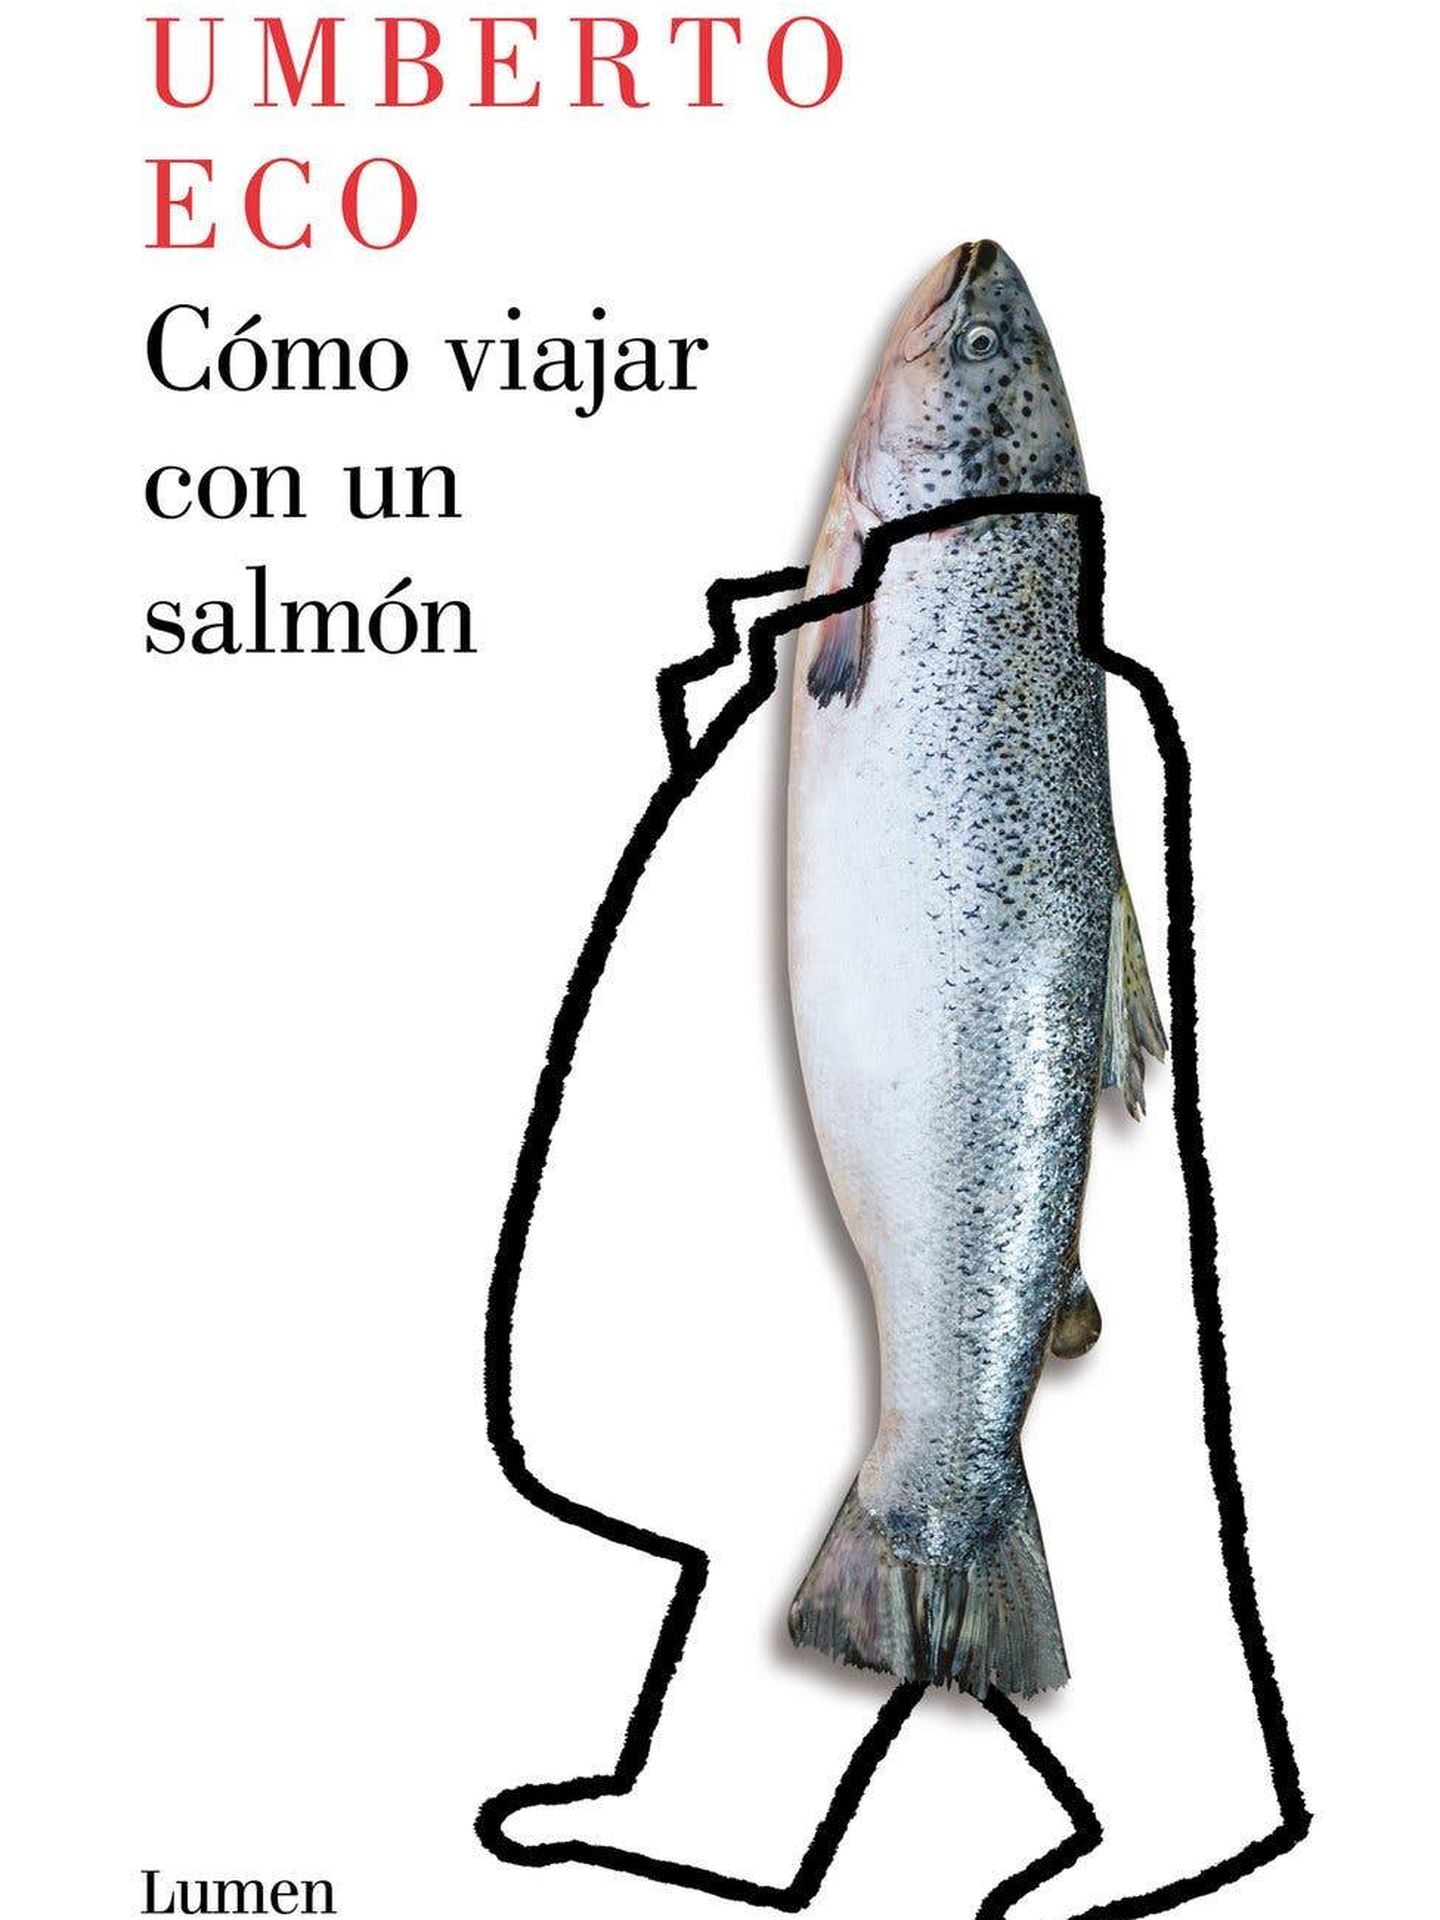 'Cómo viajar con un salmón'.